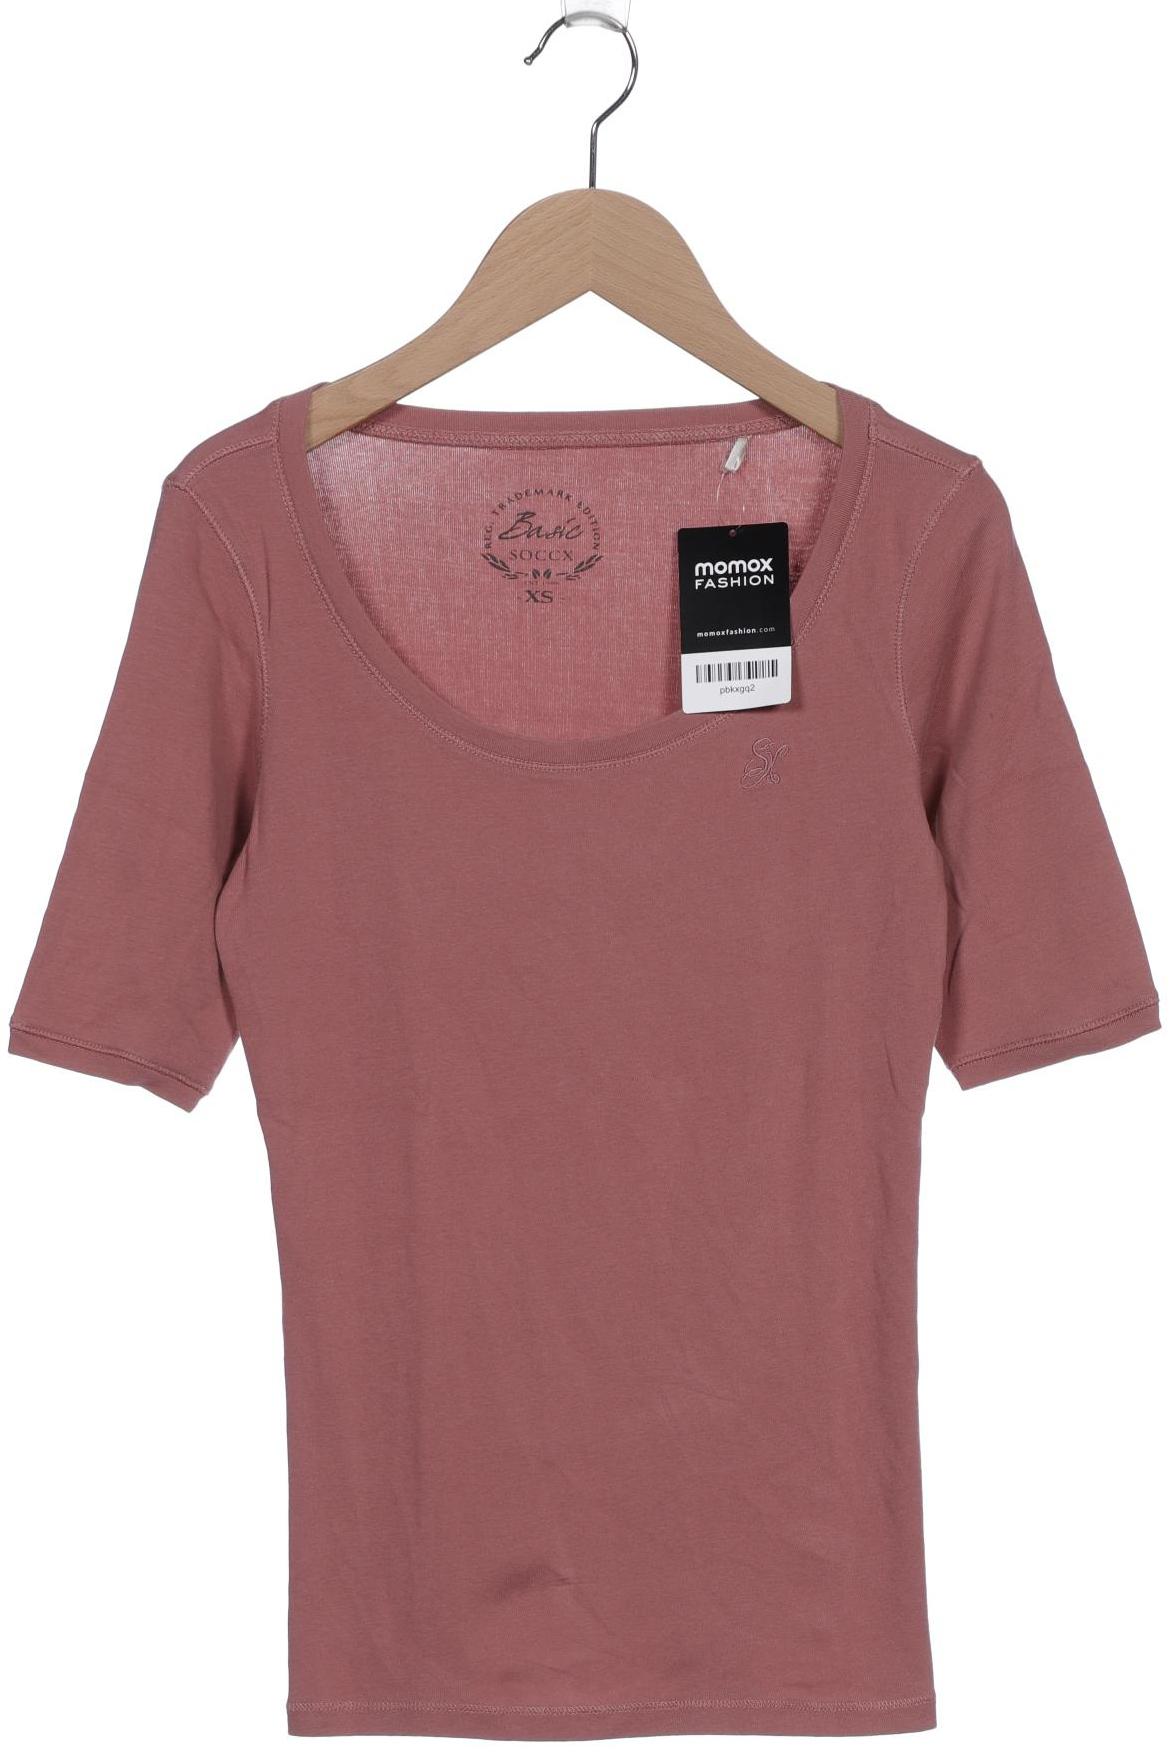 Soccx Damen T-Shirt, pink, Gr. 34 von SOCCX